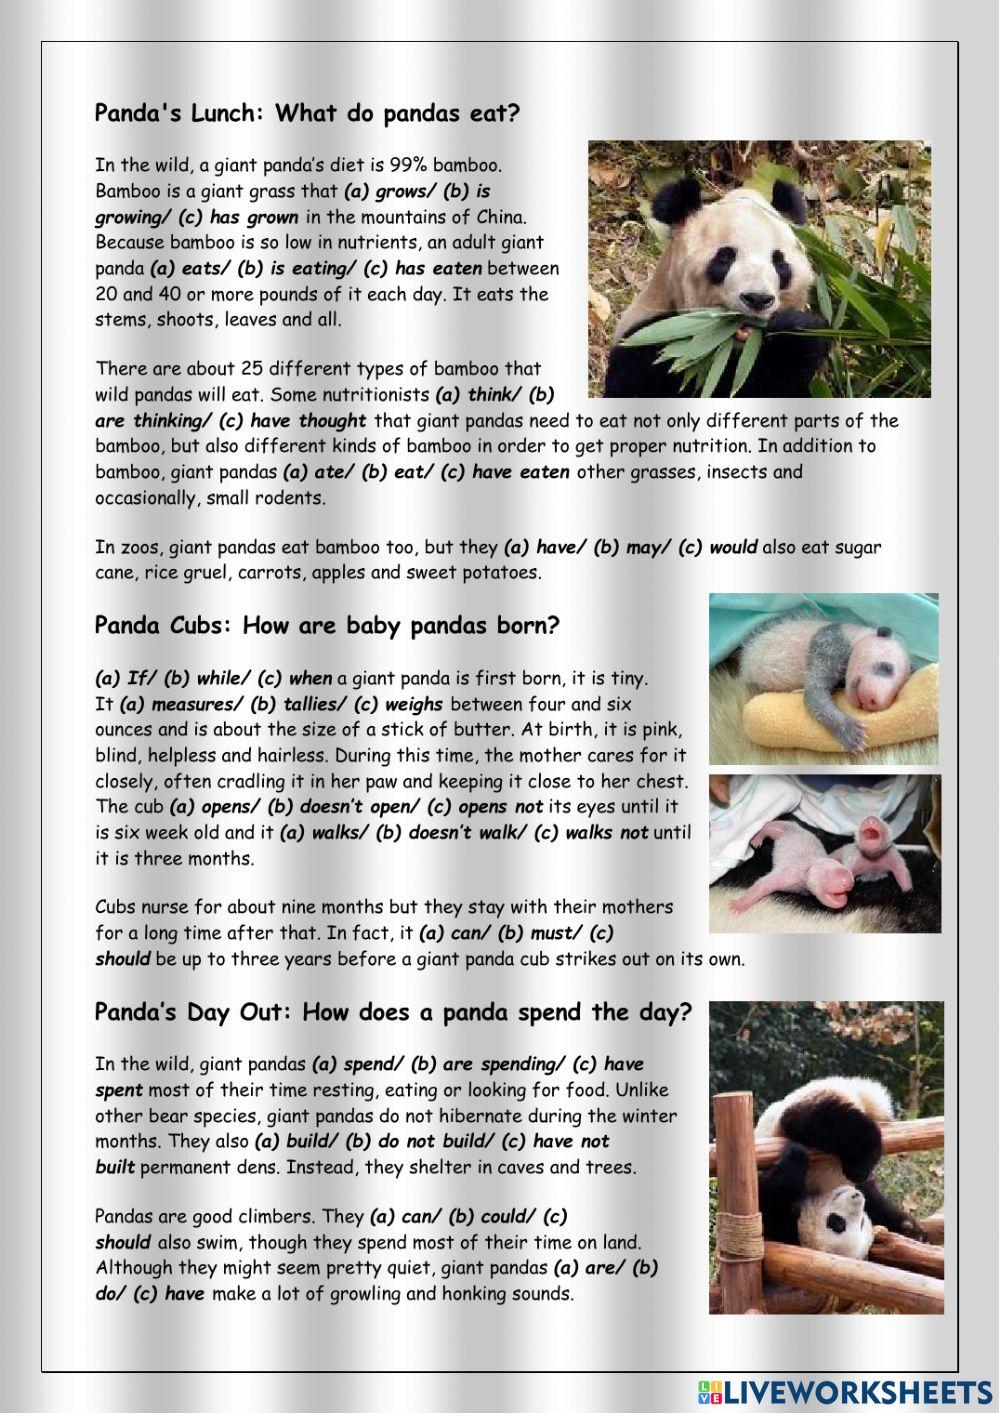 Reading pandas